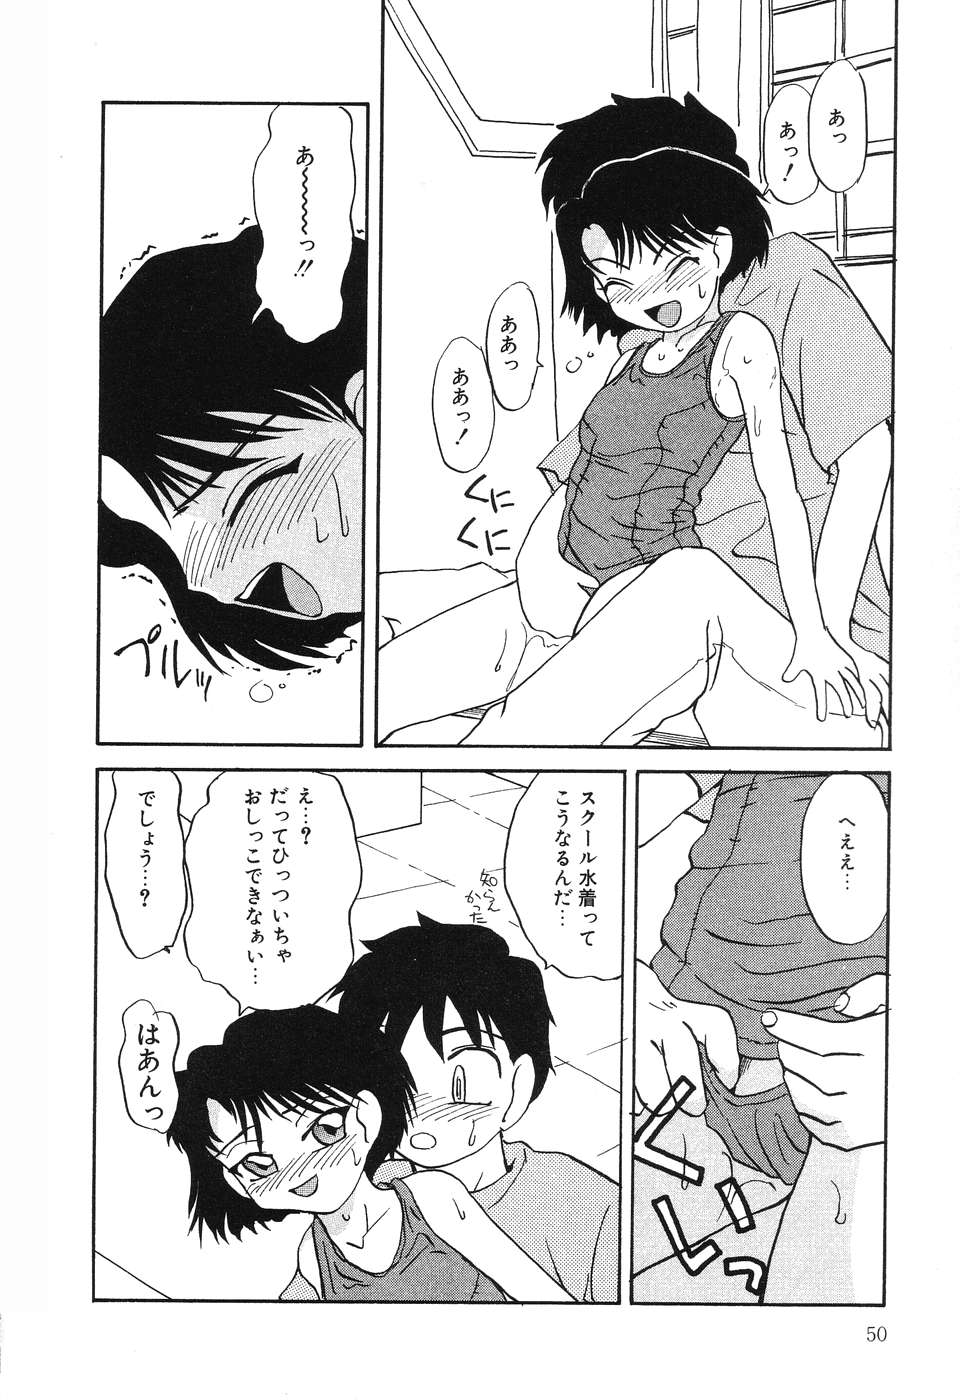 [Hisatomi Shintarou] Nounai Mayaku page 51 full